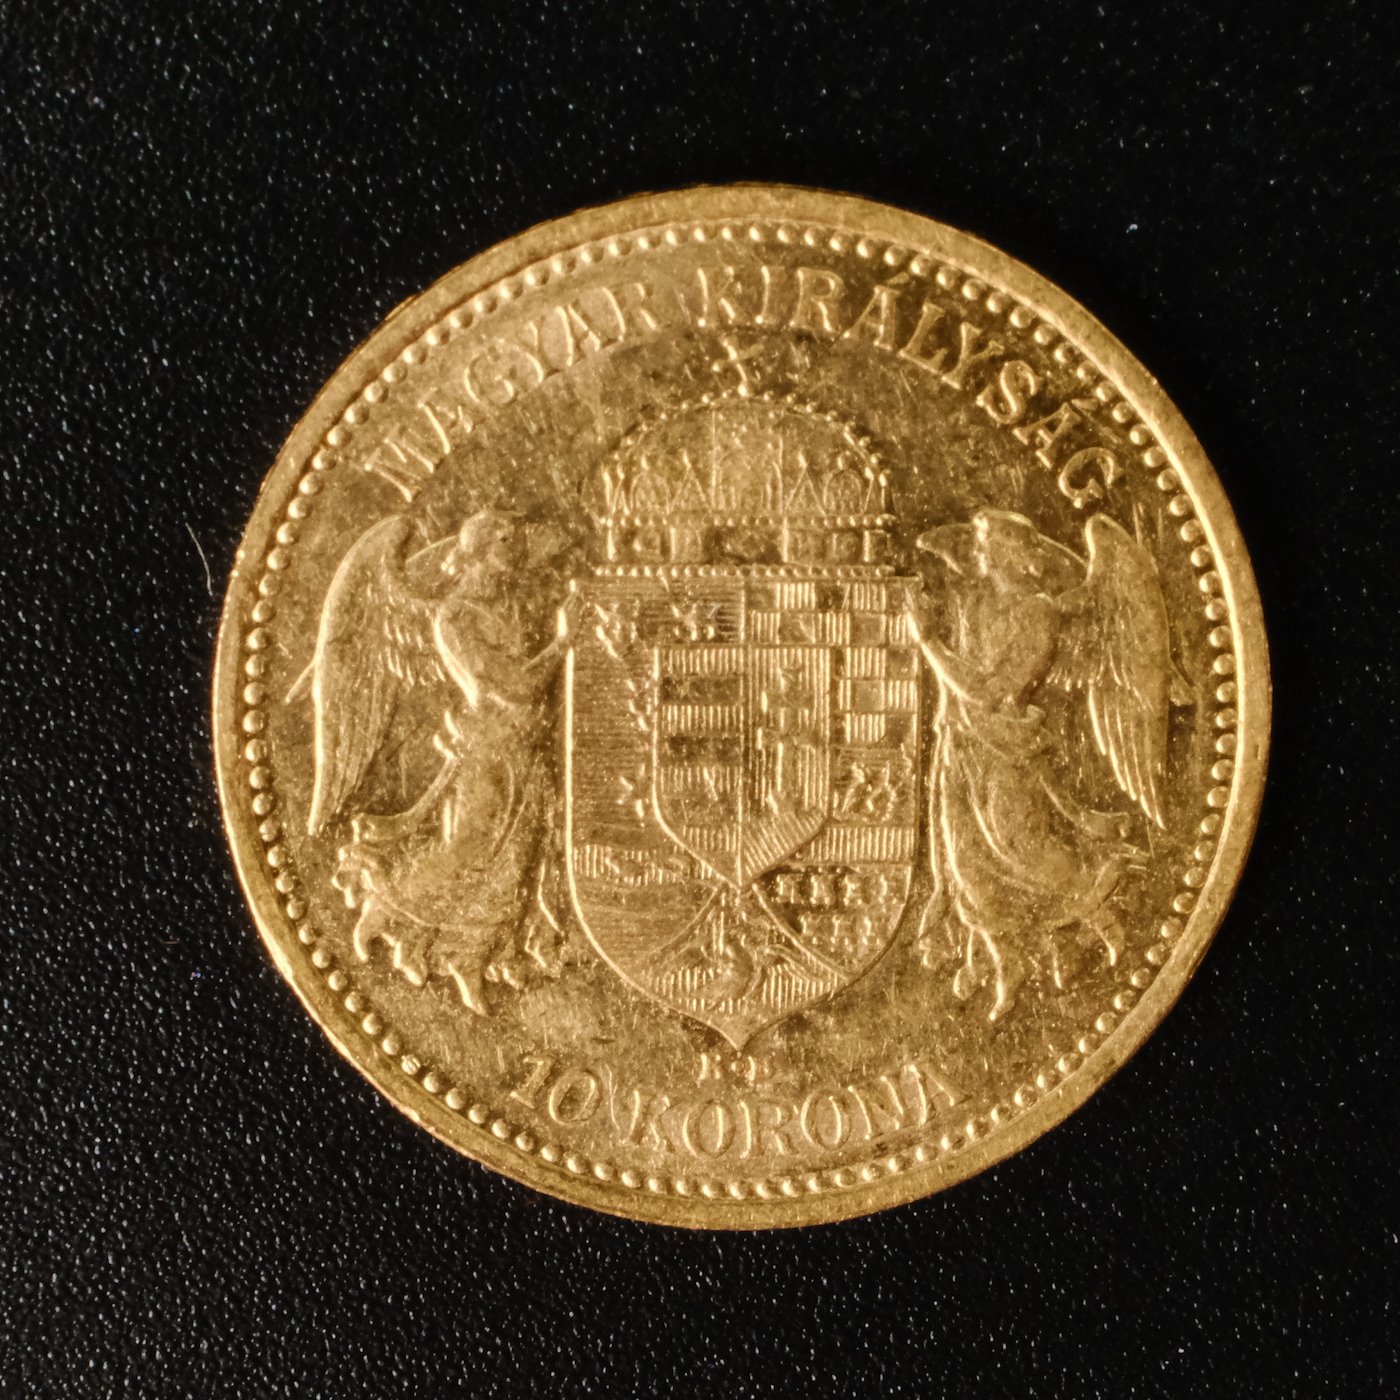 Mince - Rakousko Uhersko zlatá 10 Koruna 1904 K.B. uherská, Zlato 900/1000, hrubá hmotnost mince 3,387g